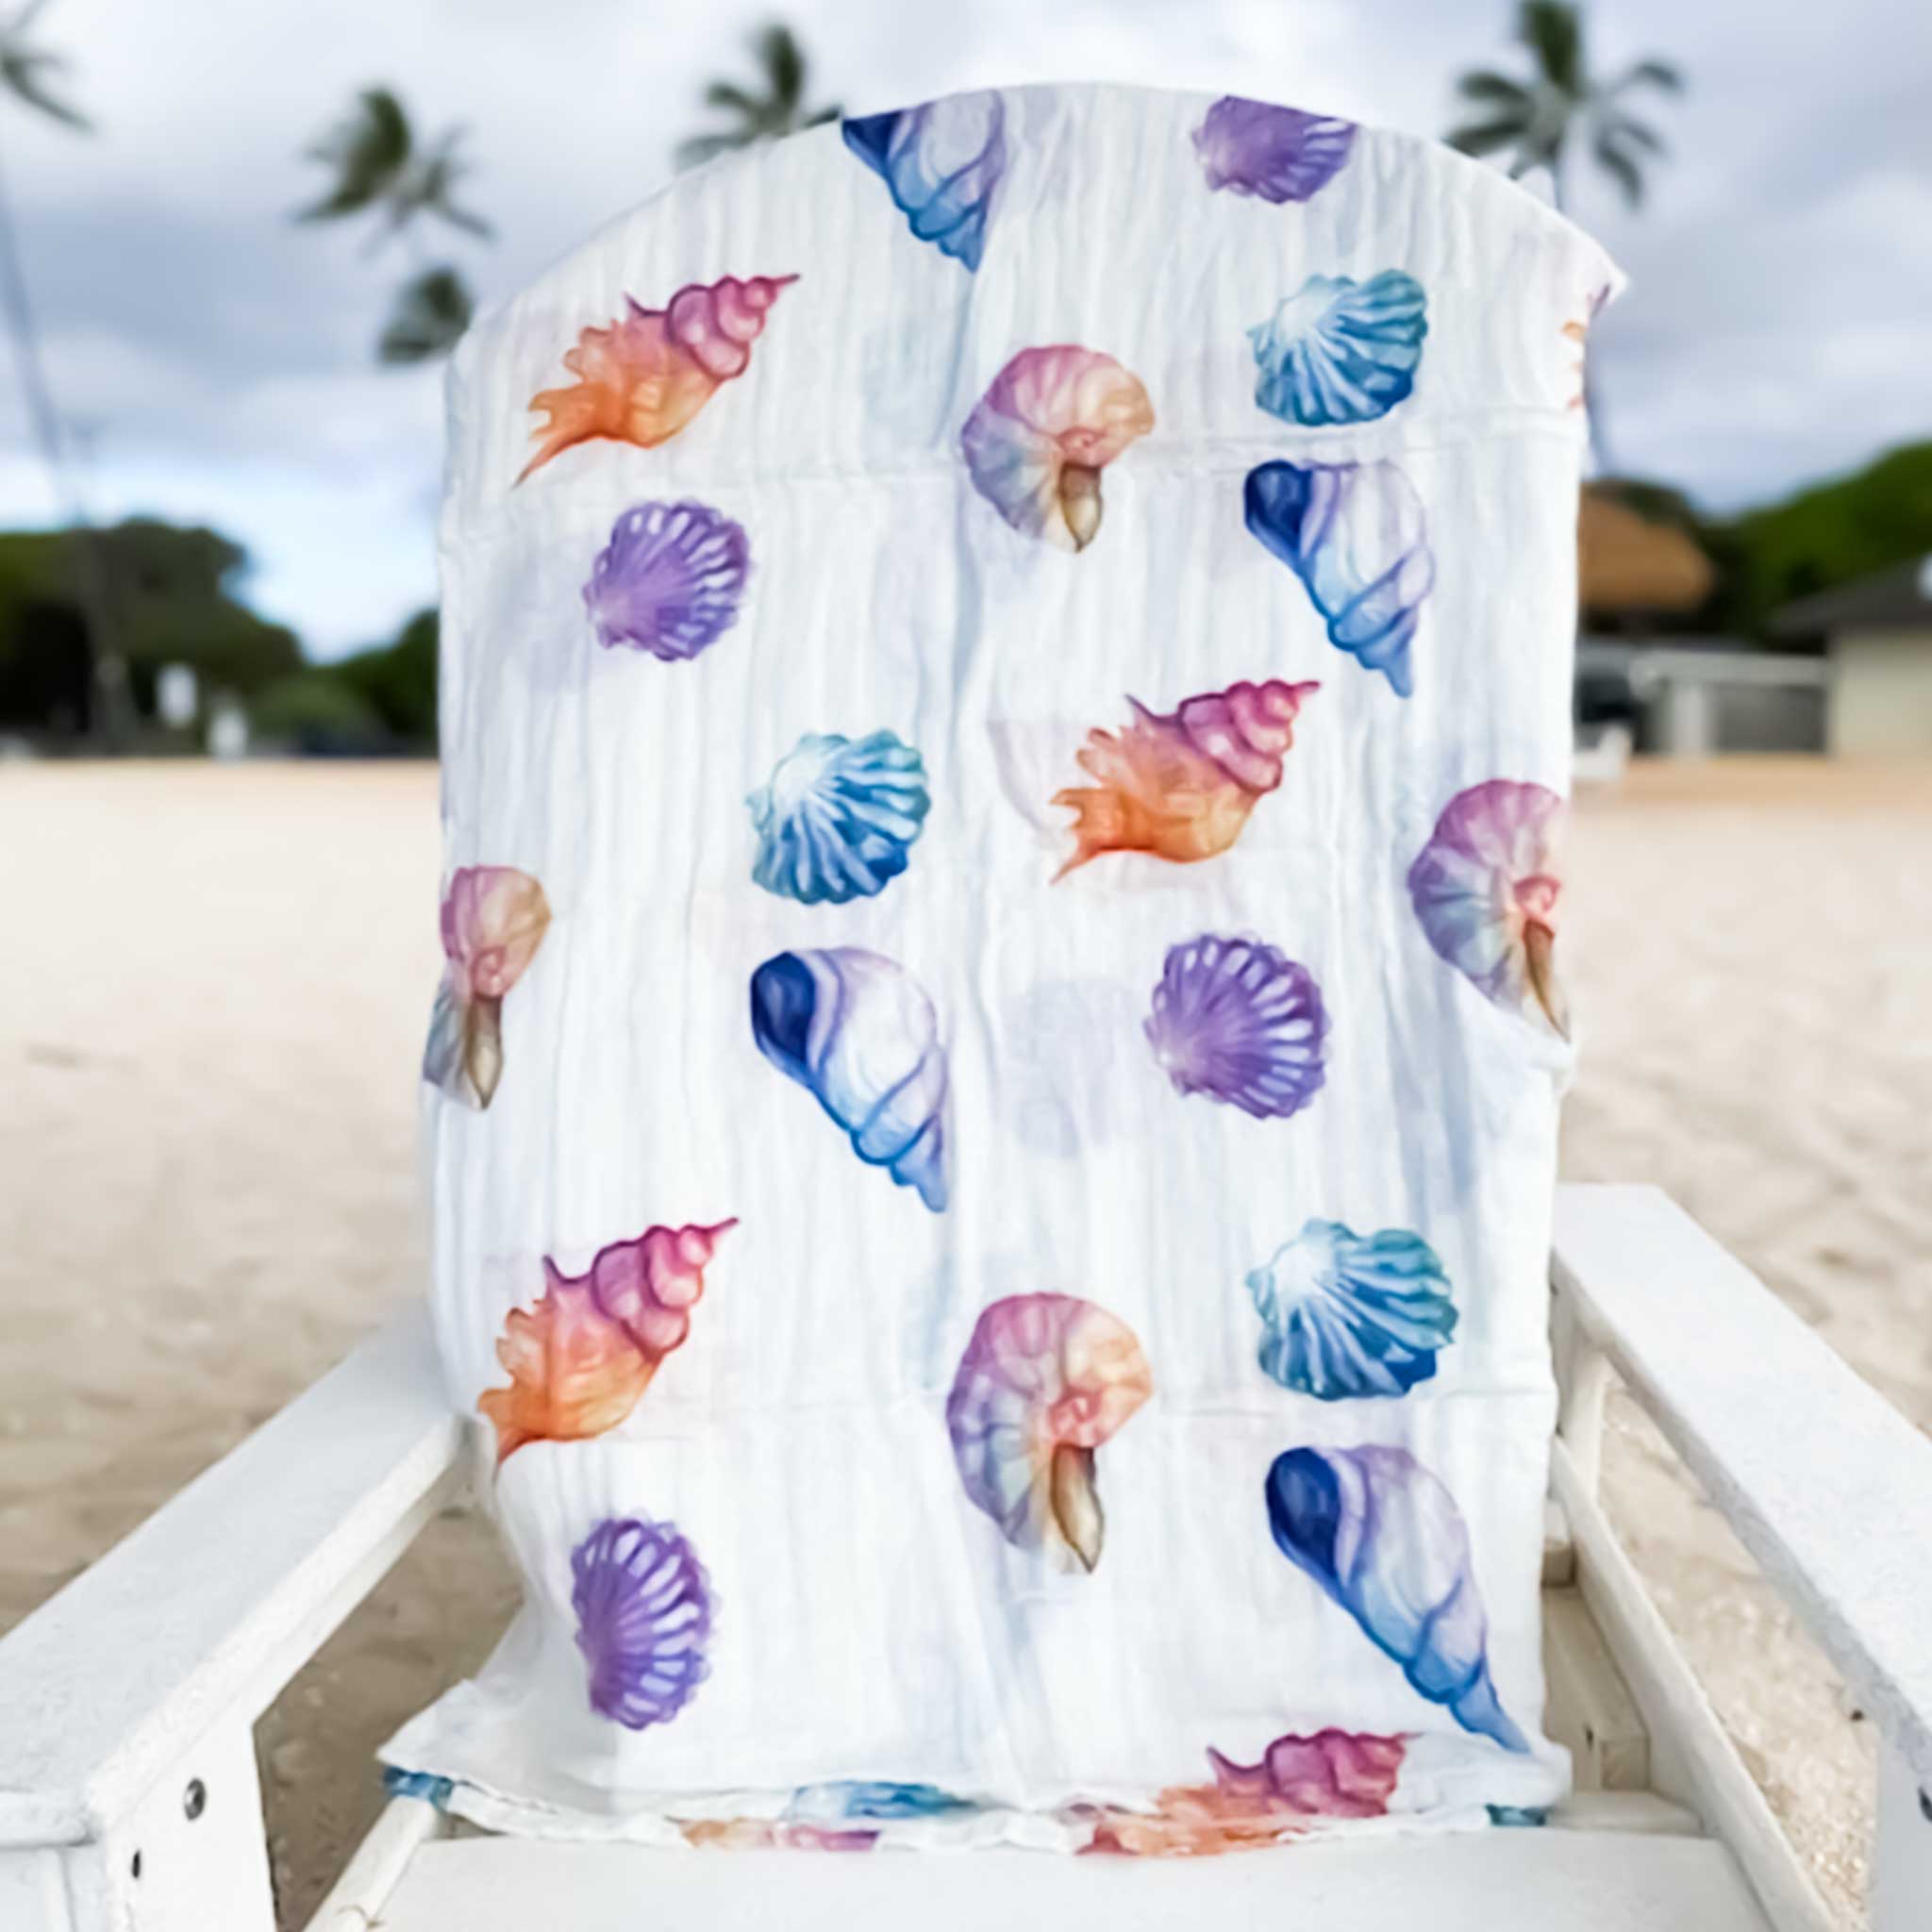 Hawaiian Ocean Life 12 Handmade Plushie - Uhu Parrotfish – Hawaiiverse